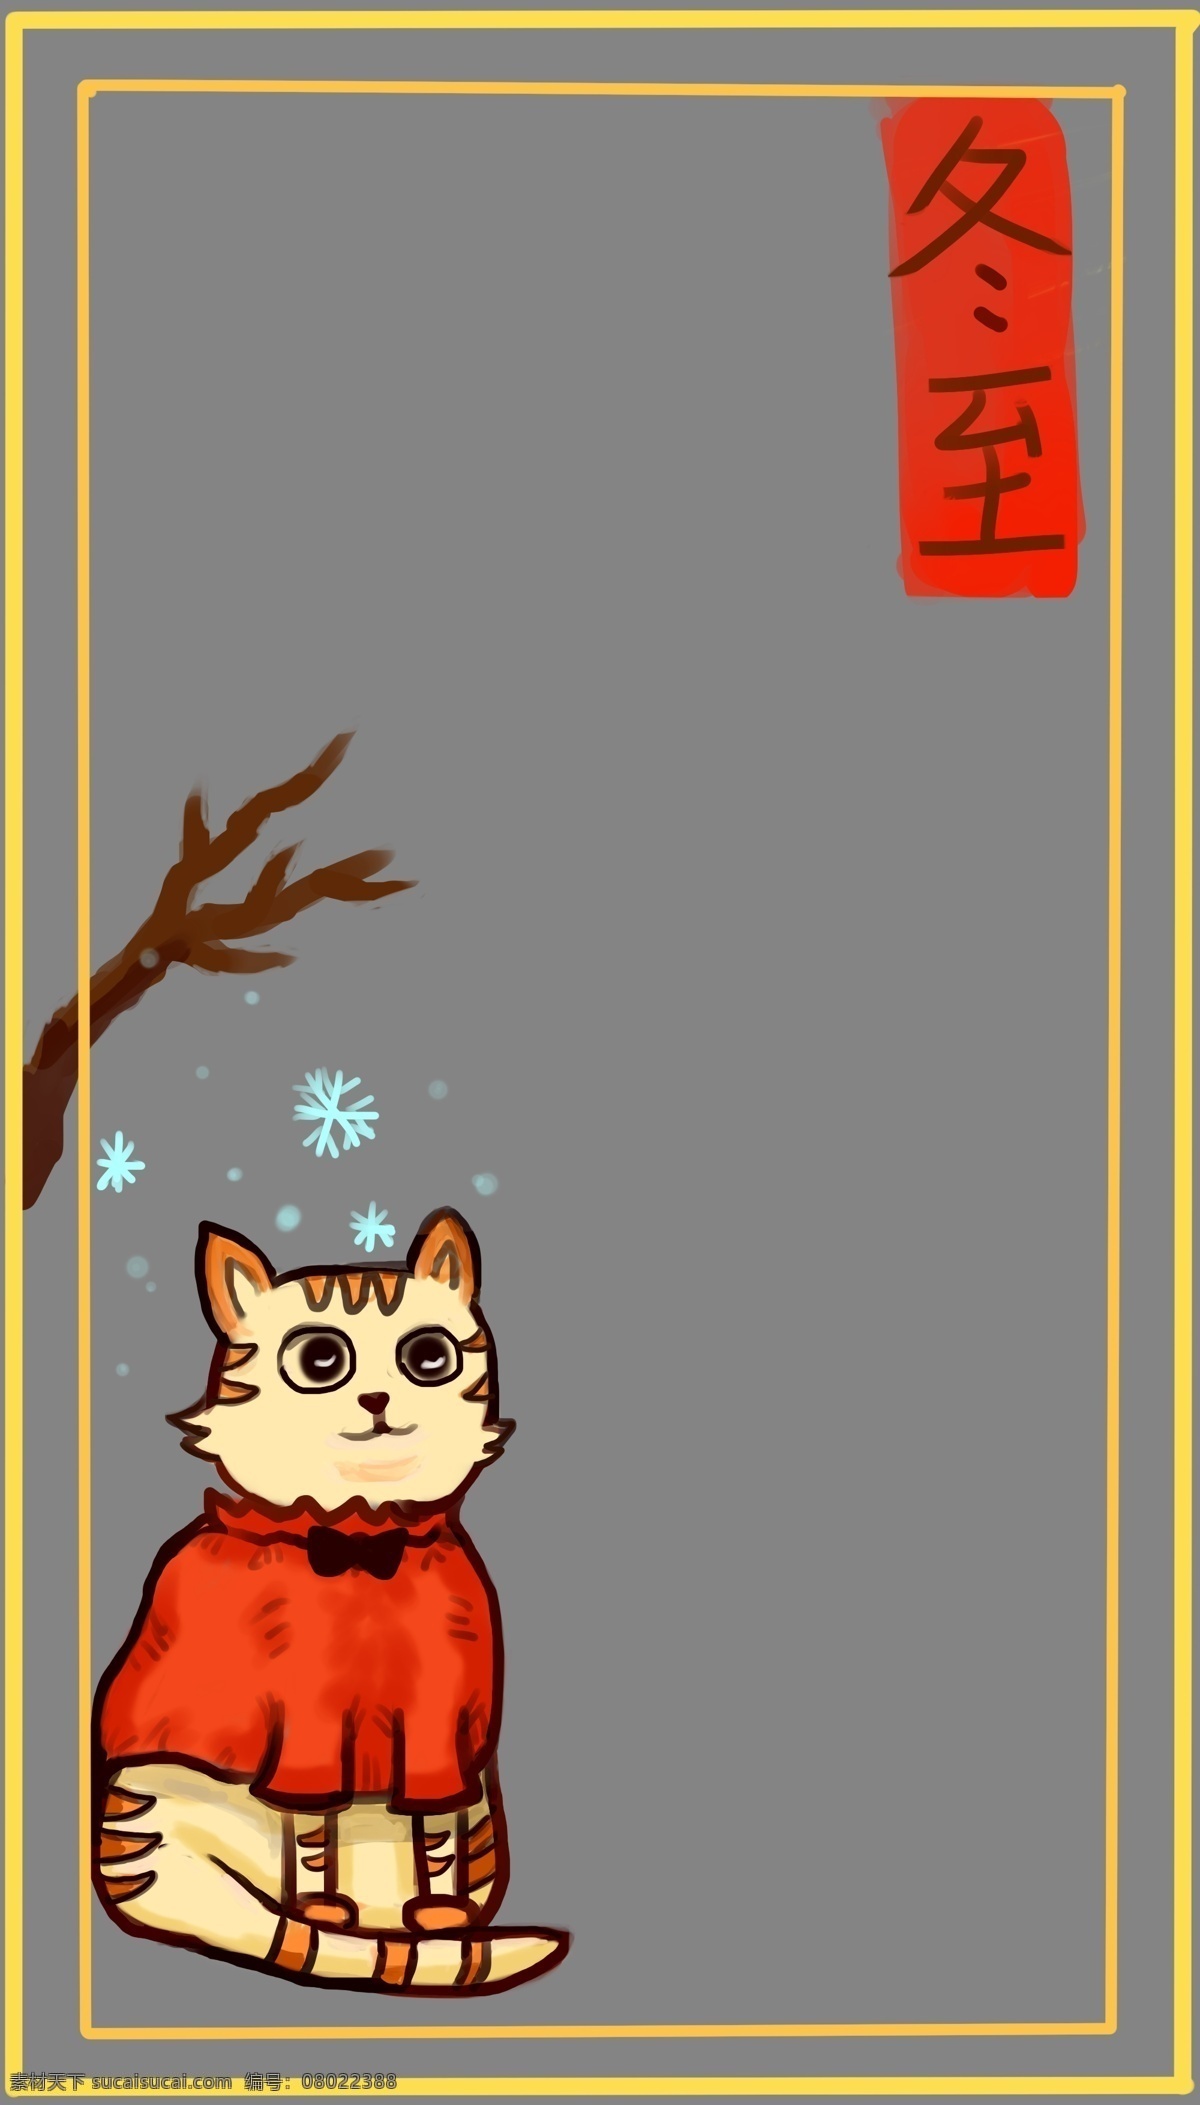 冬至 猫咪 背景 框 手绘 插画 可爱的猫咪 猫咪插画 唯美边框 边框插画 冬至背景边框 褐色的树枝 黄色的边框